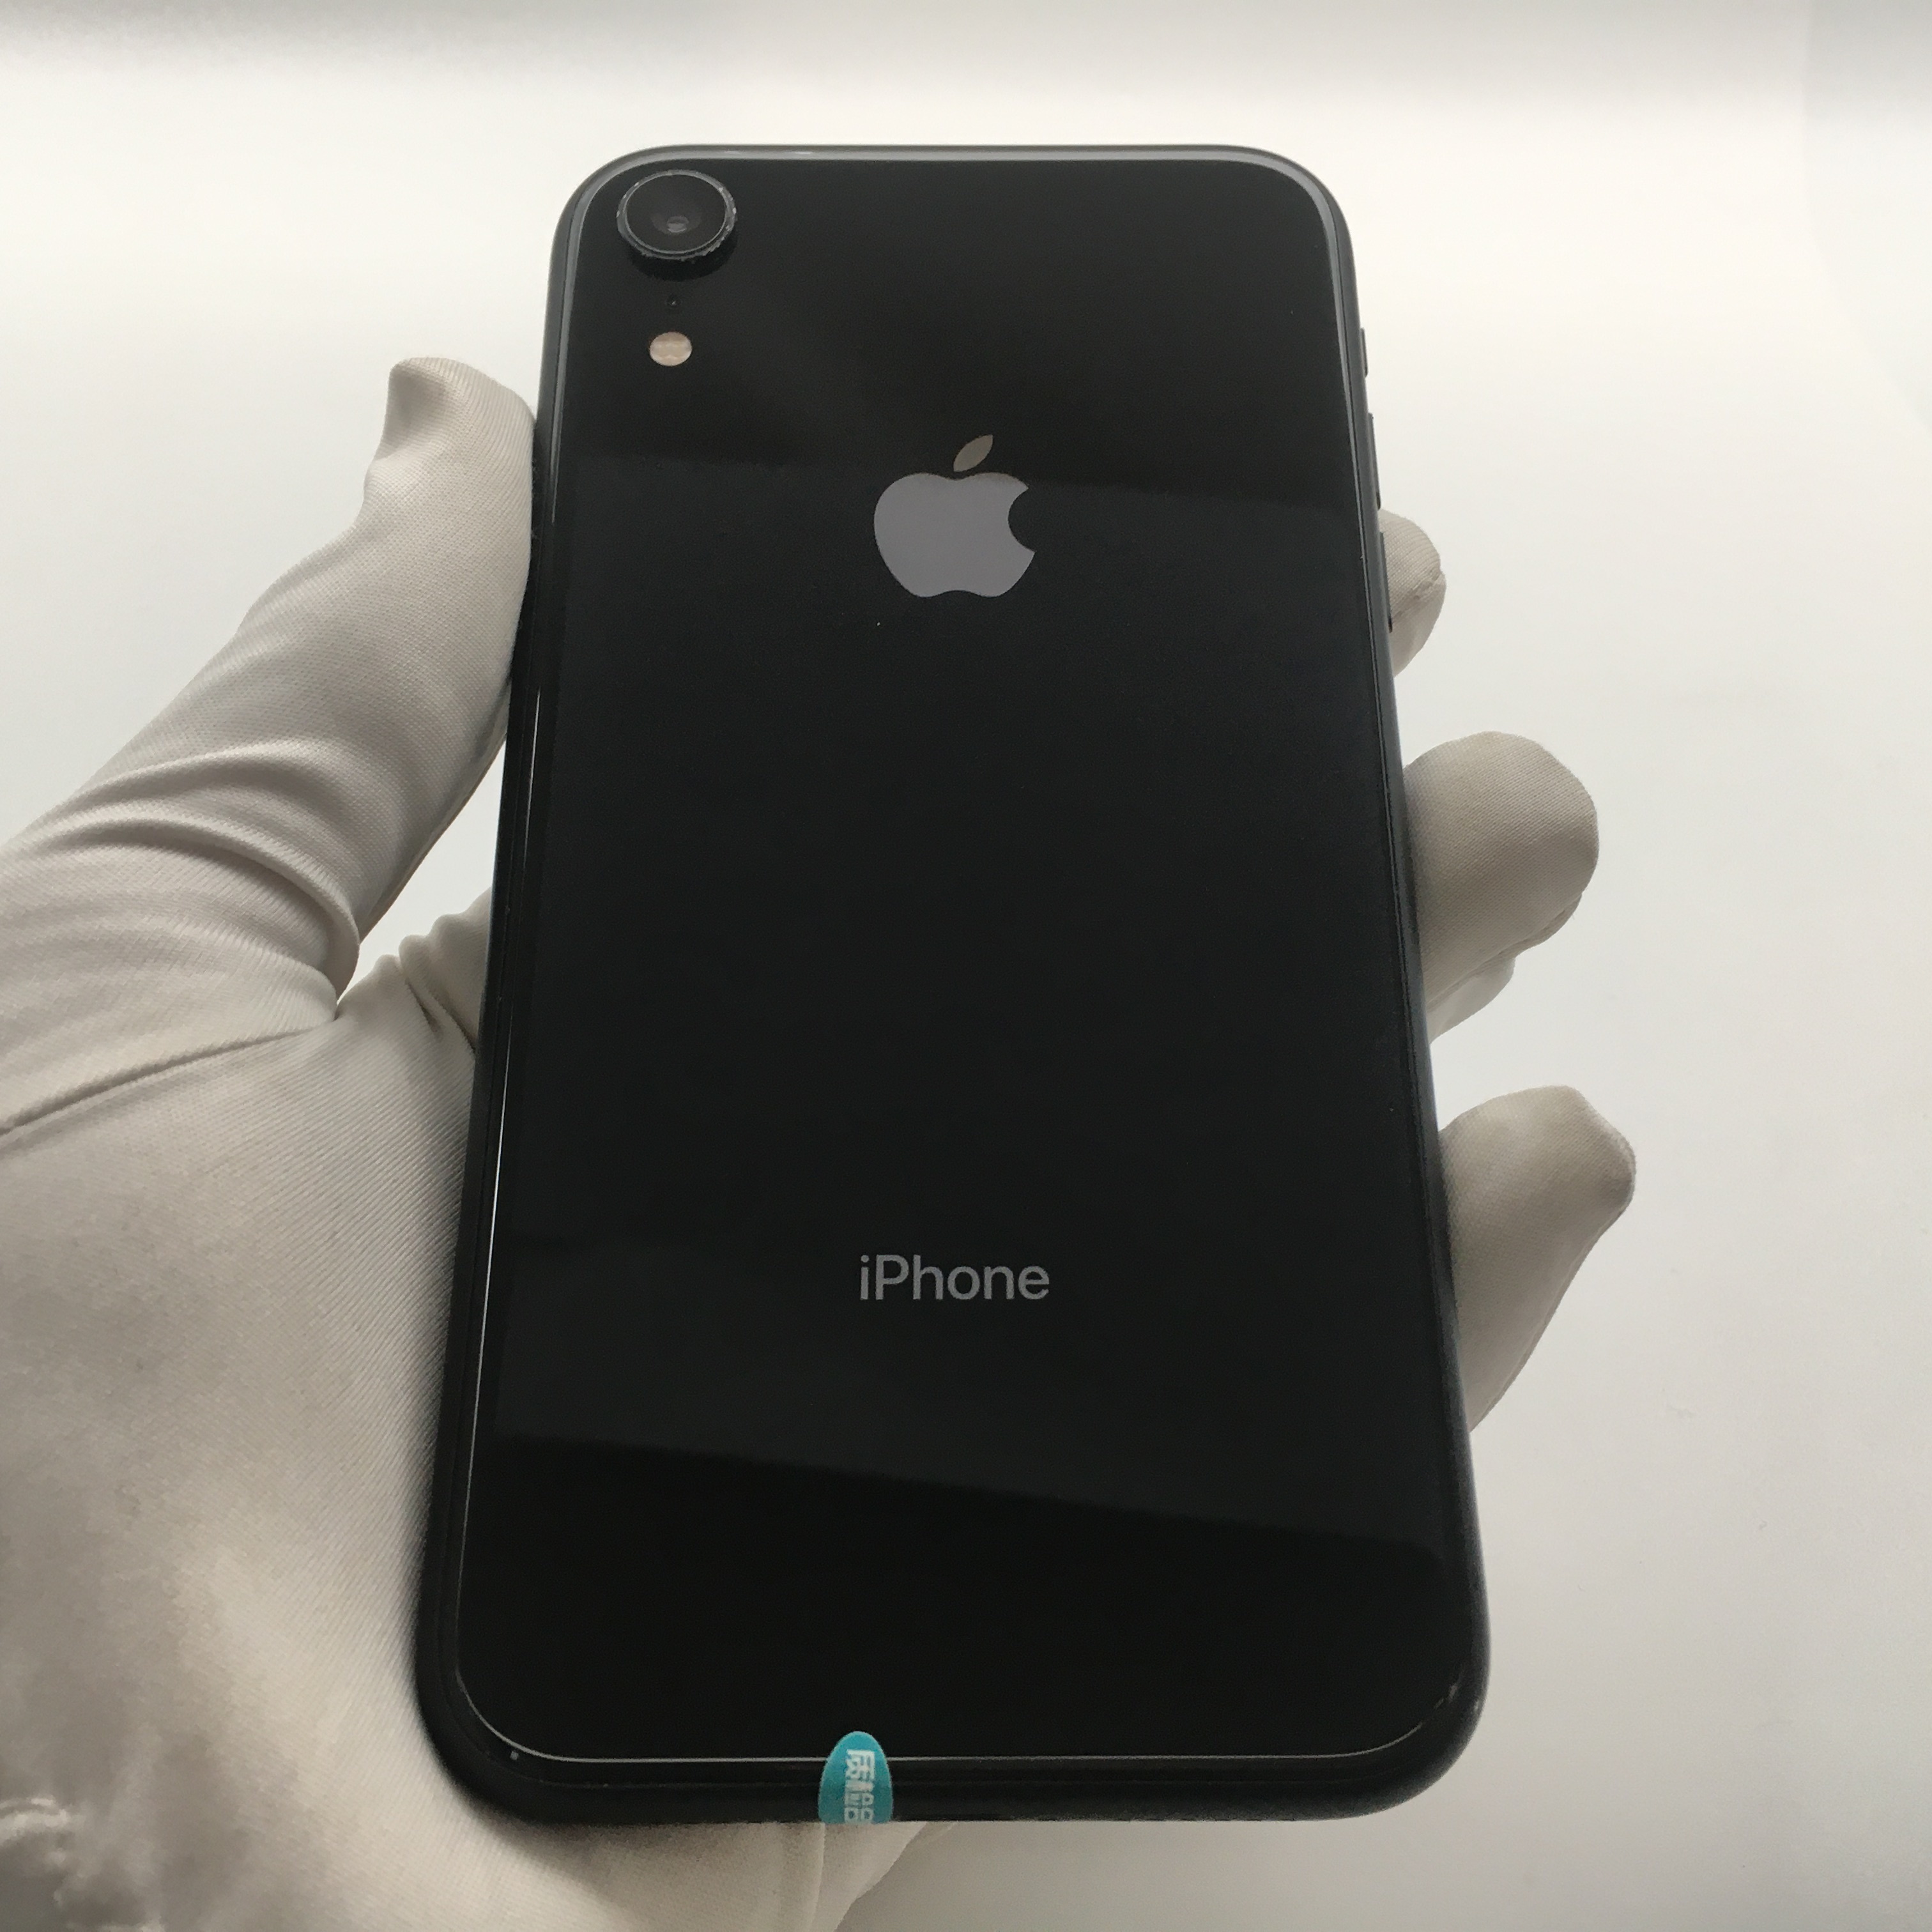 好看苹果颜色手机推荐_苹果手机颜色哪个好看_iphone最好看的颜色